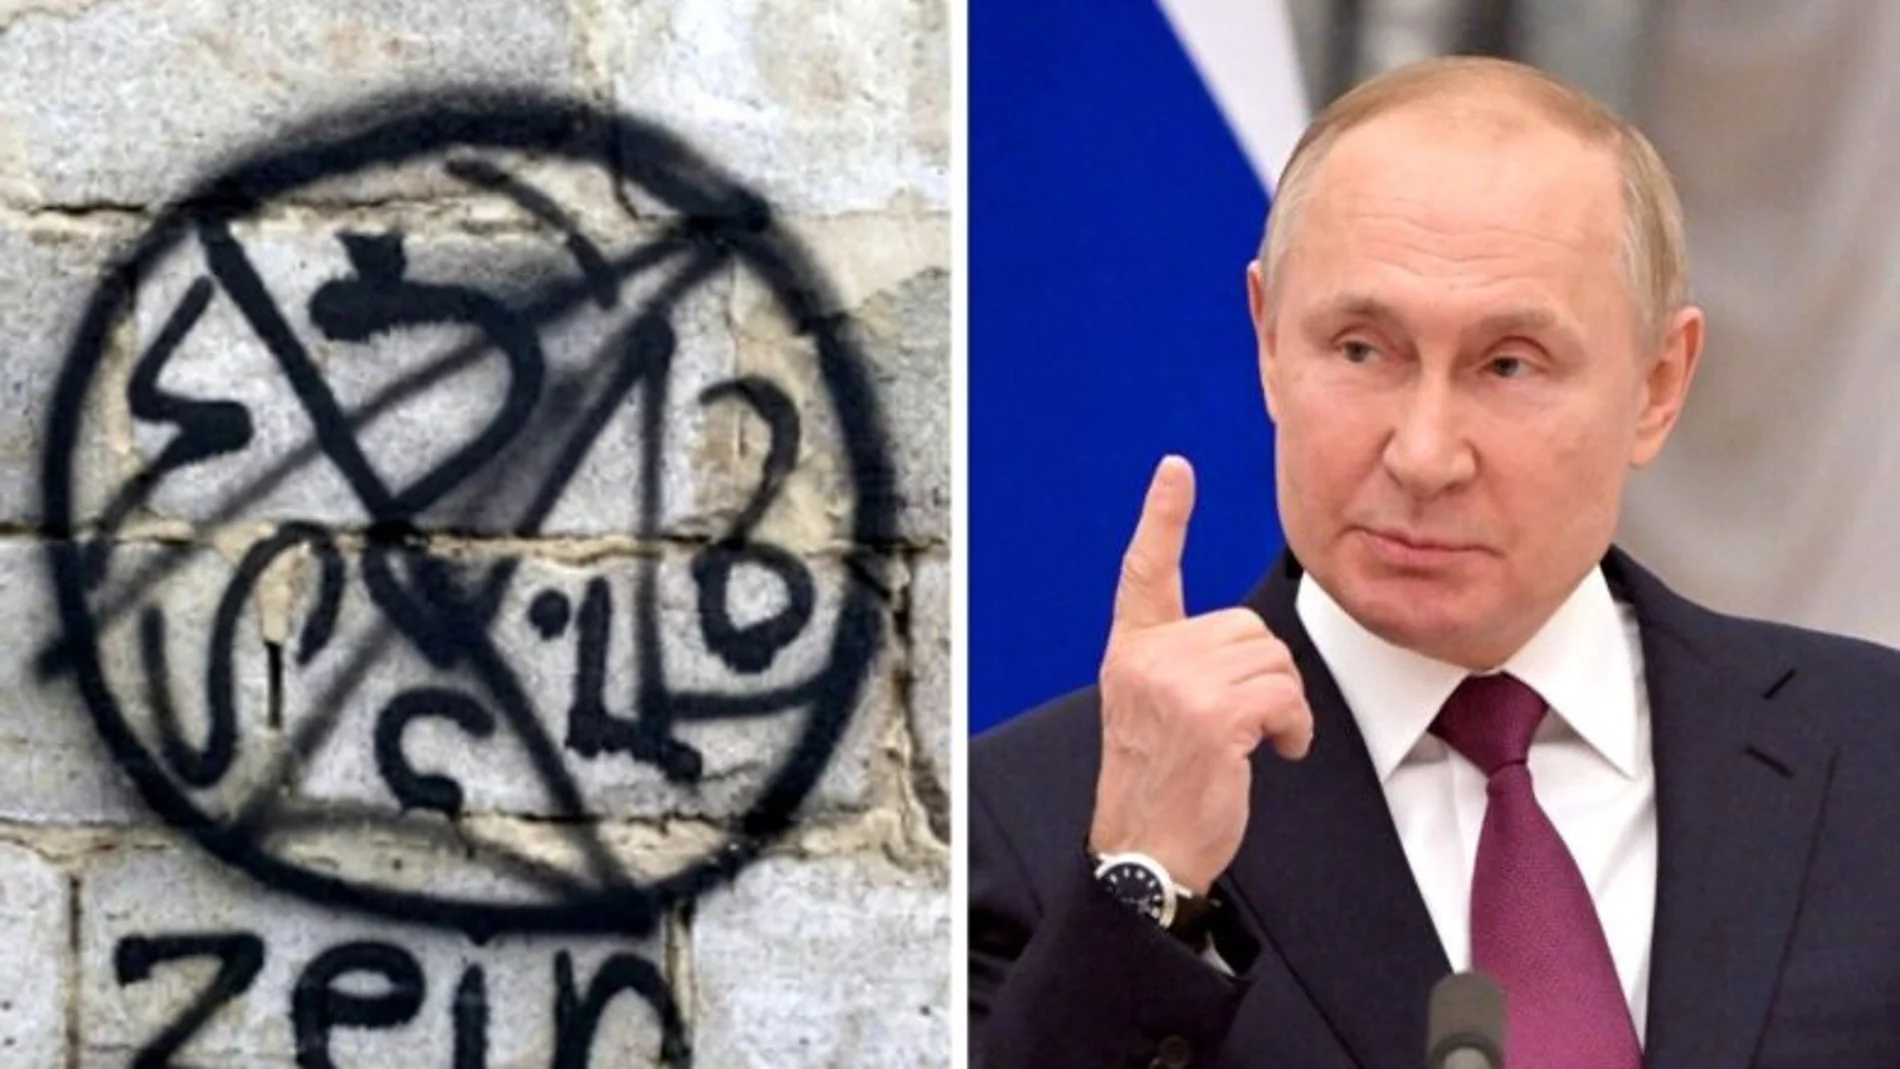 Las tropas de Vladimir Putin se encontraron con un “sello satánico” en Ucrania